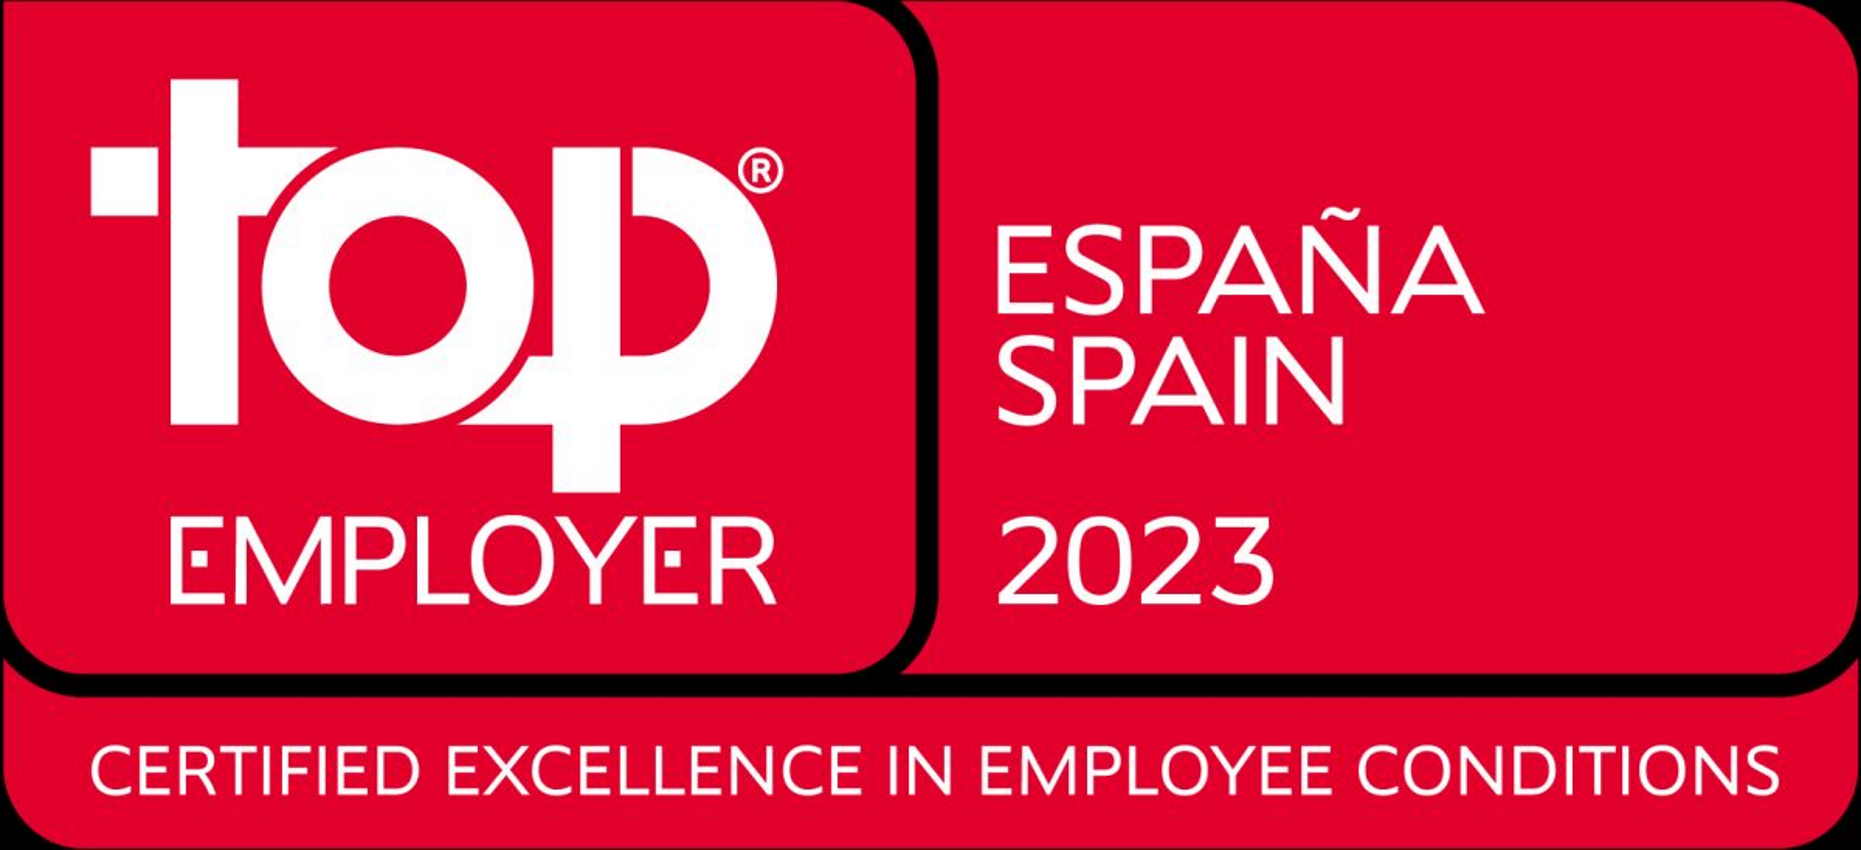 Imagen del logo de Top Employer